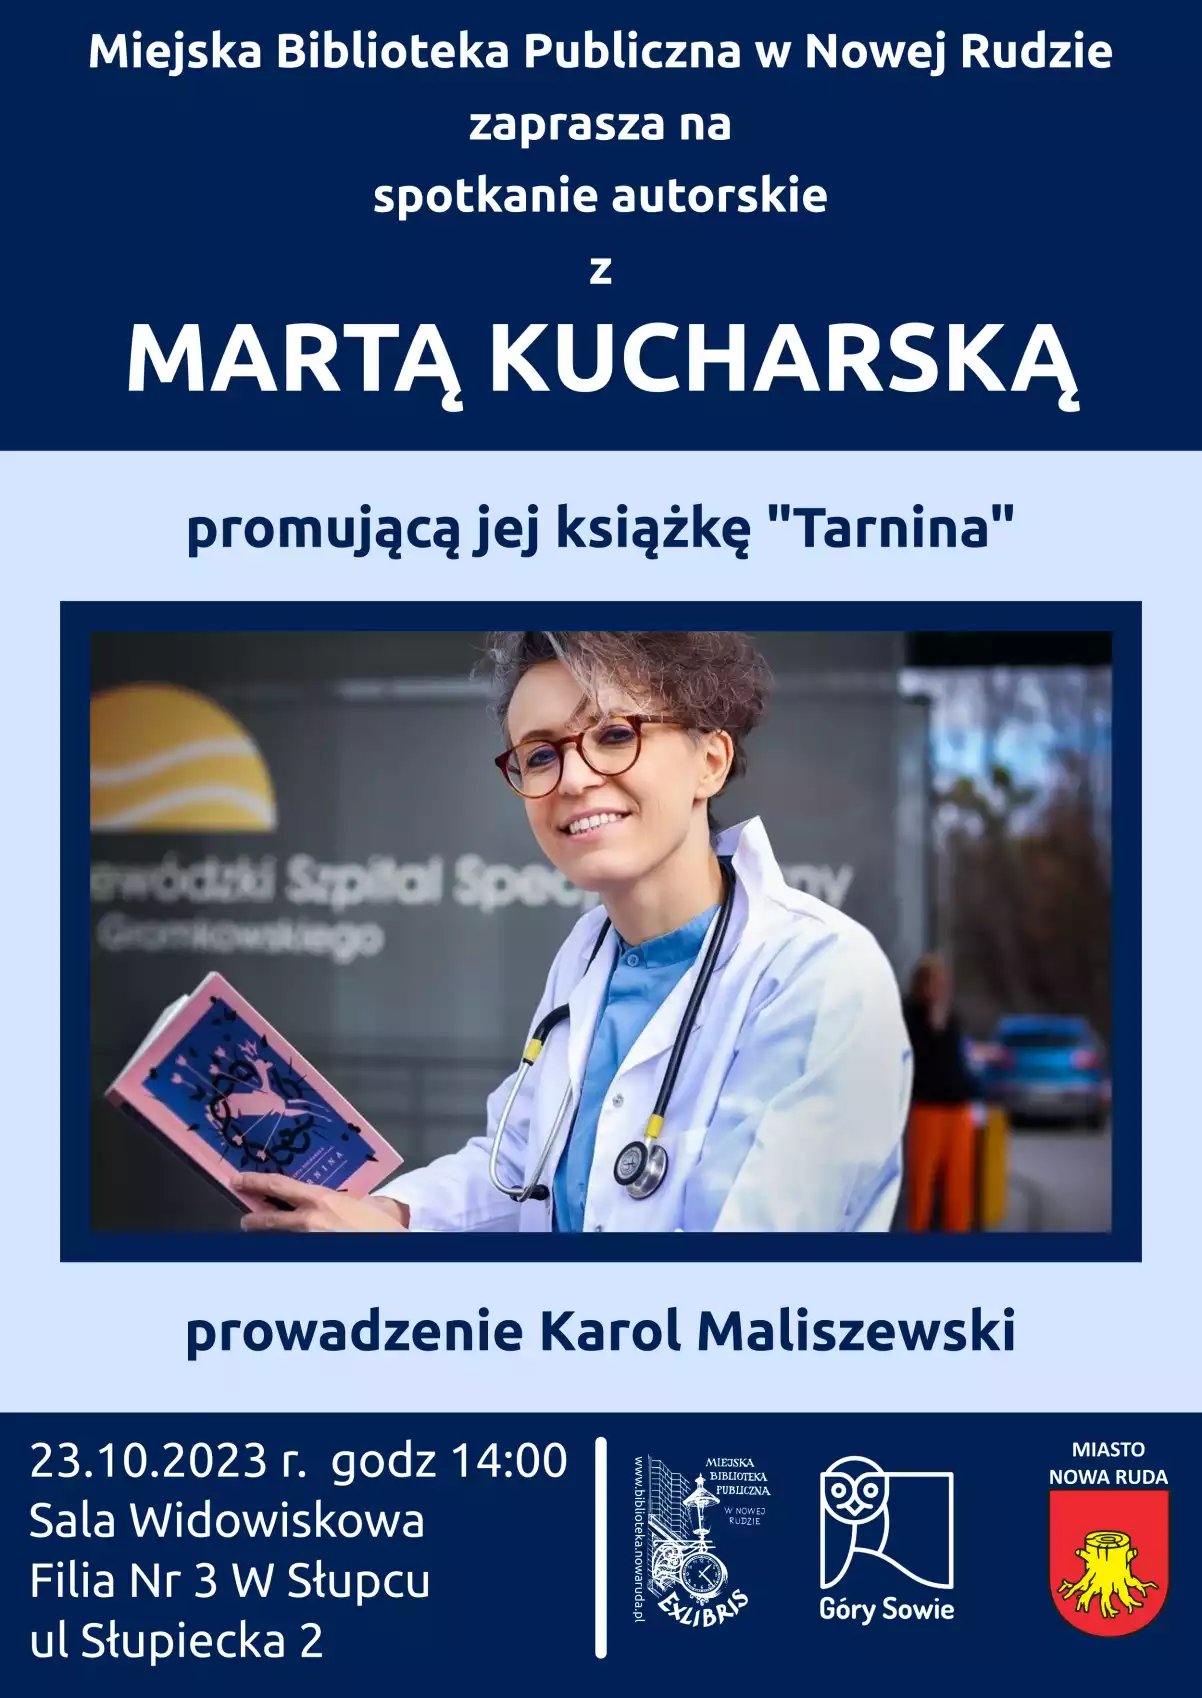 Plakat promujący spotkanie autorskie z Martą Kucharską